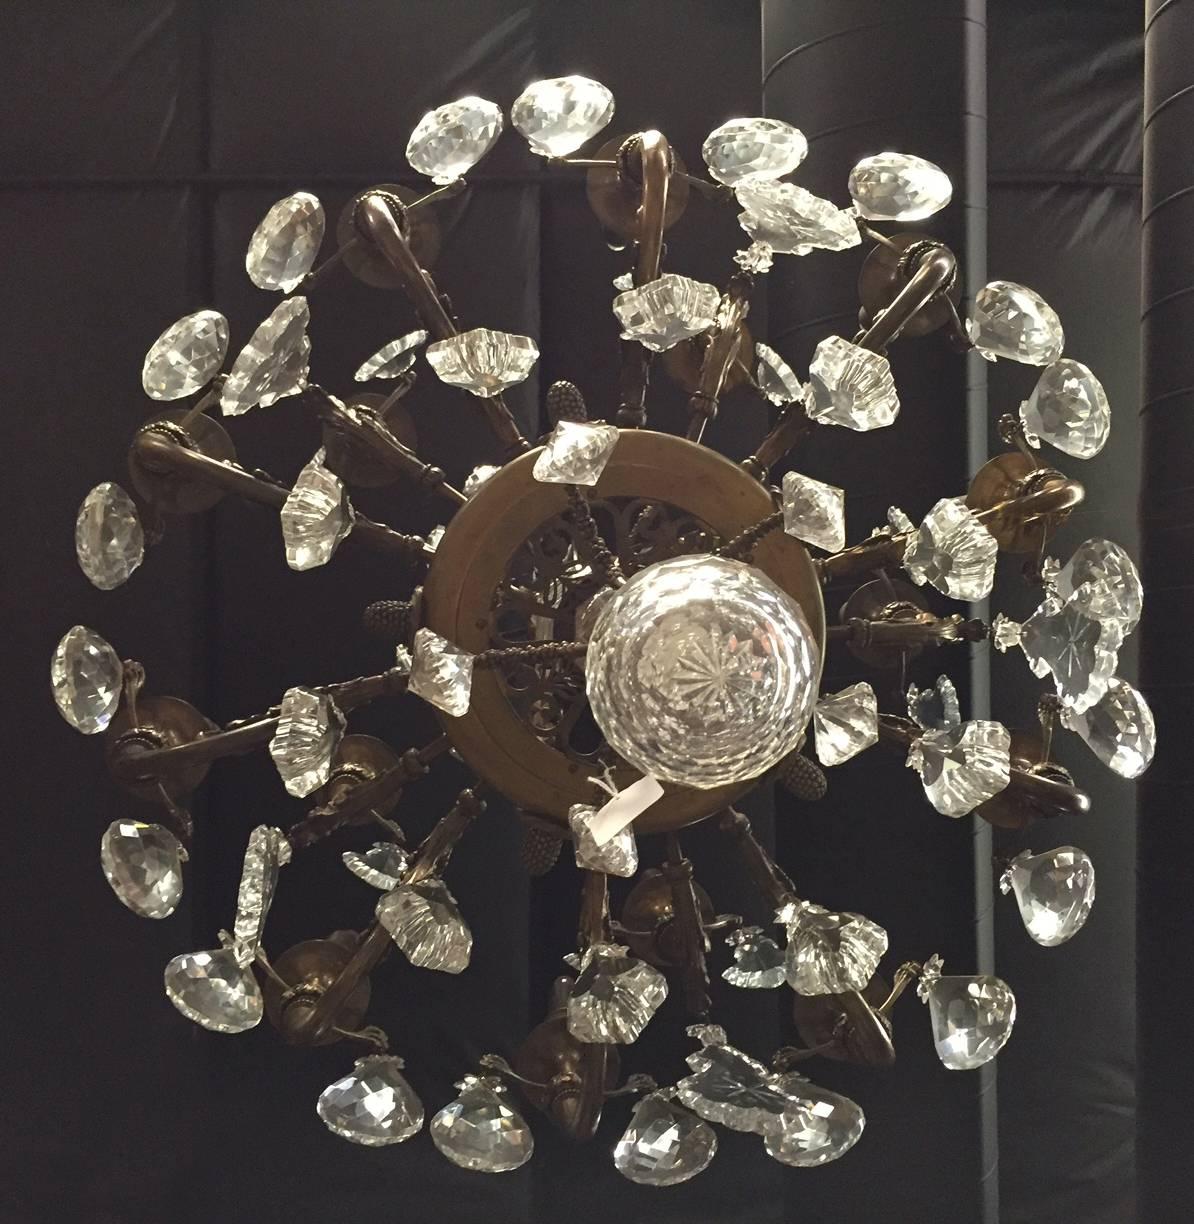 Important lustre ancien à deux niveaux à quinze lumières en bronze et cristal taillé de Baccarat. Toutes les parties en bronze et les dorures sont garanties d'origine Baccarat.

La couronne supérieure du lustre se compose de cinq têtes d'aigle en